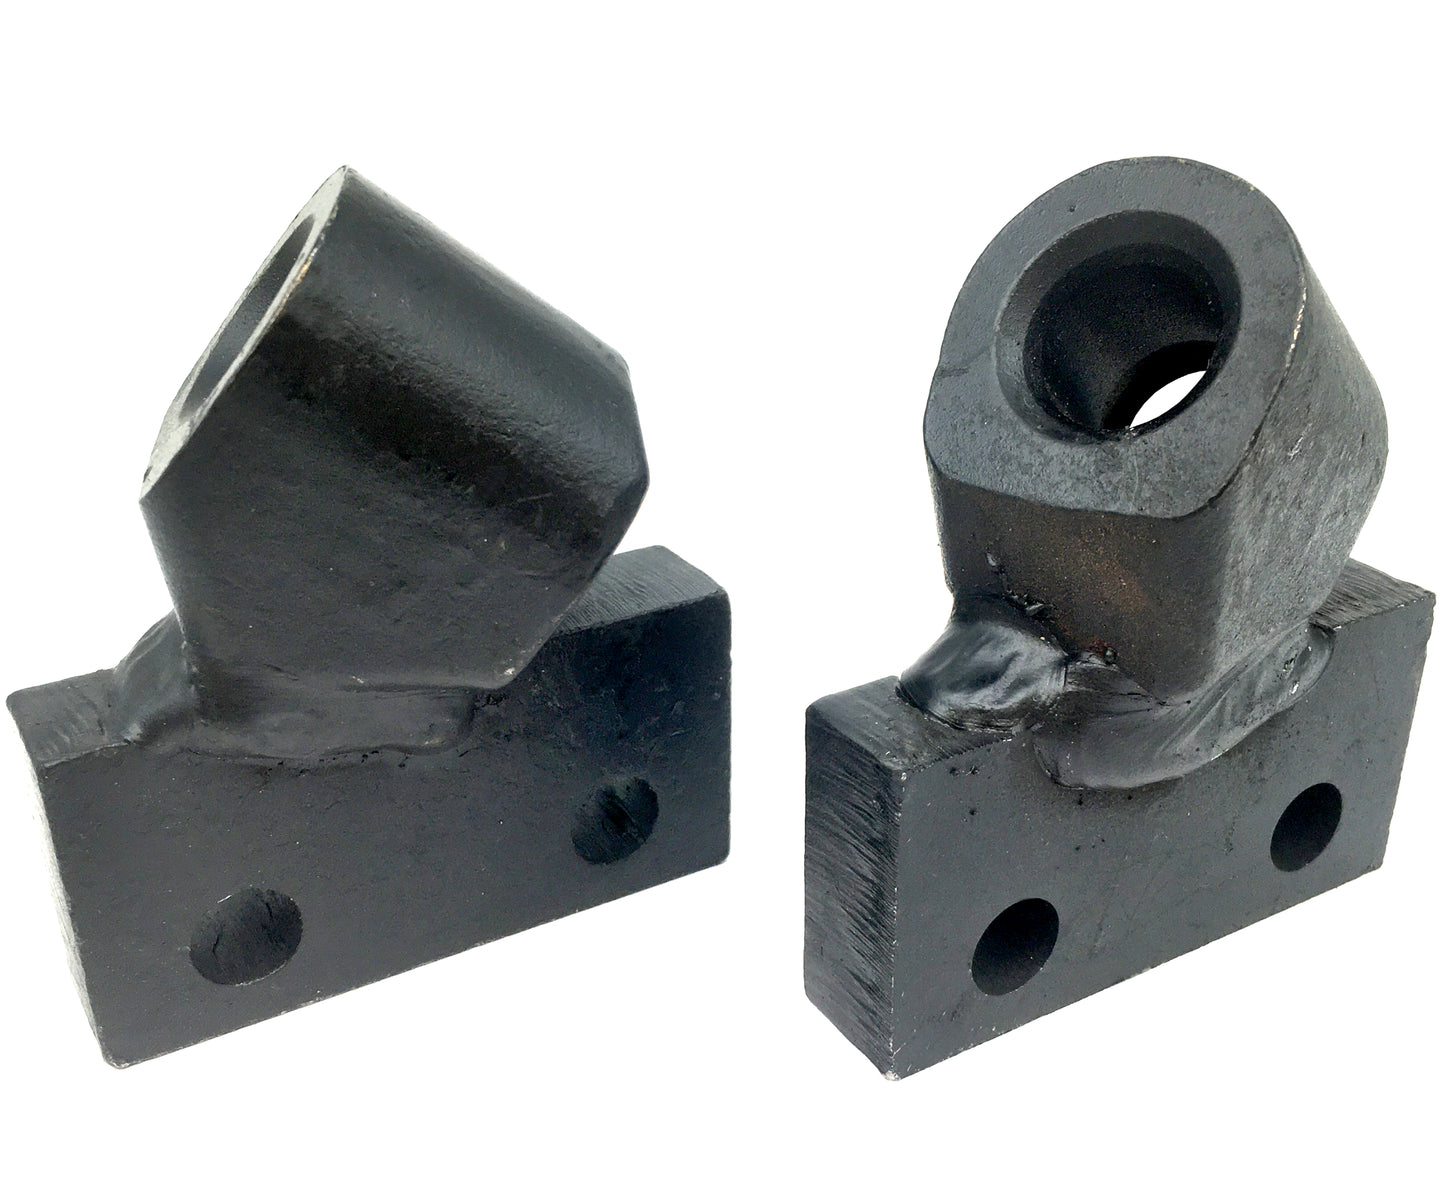 Adaptateurs de tranchée pour chaîne de roche LH &amp; RH – 136036 et 136037 – Pas de 2", coupe de 4", 19 mm